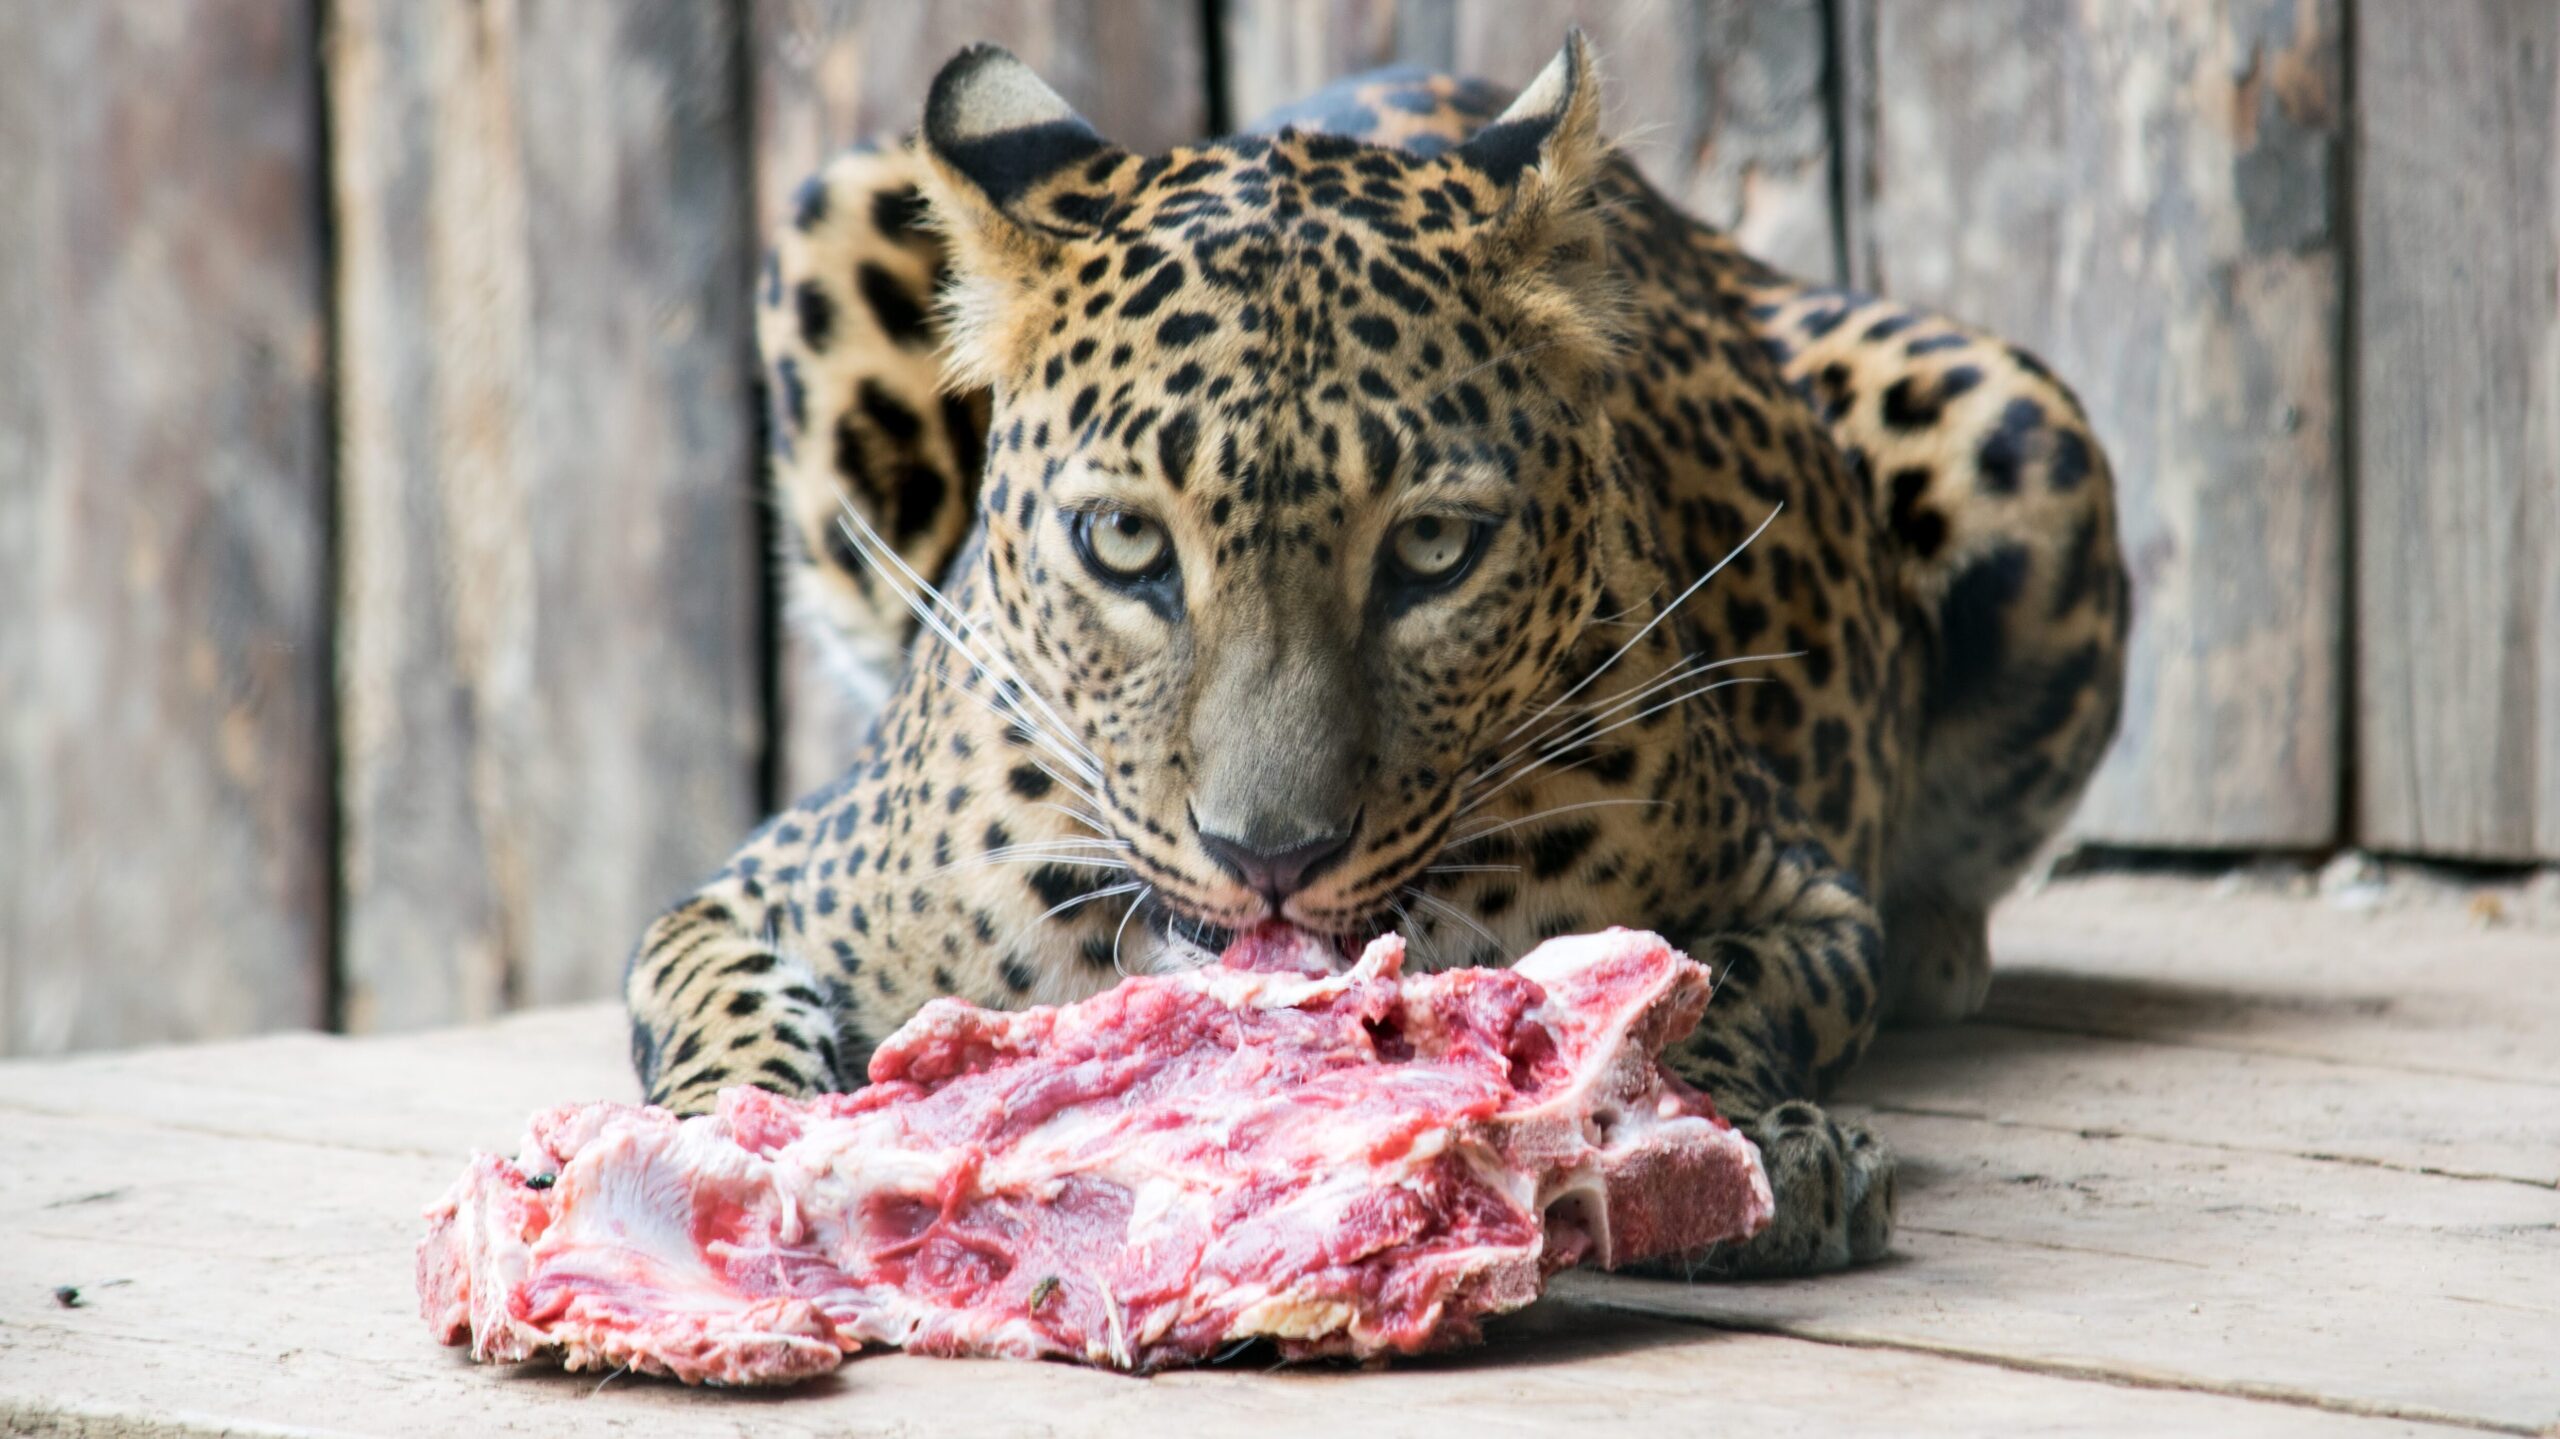 骨付き肉を食べようとしている豹